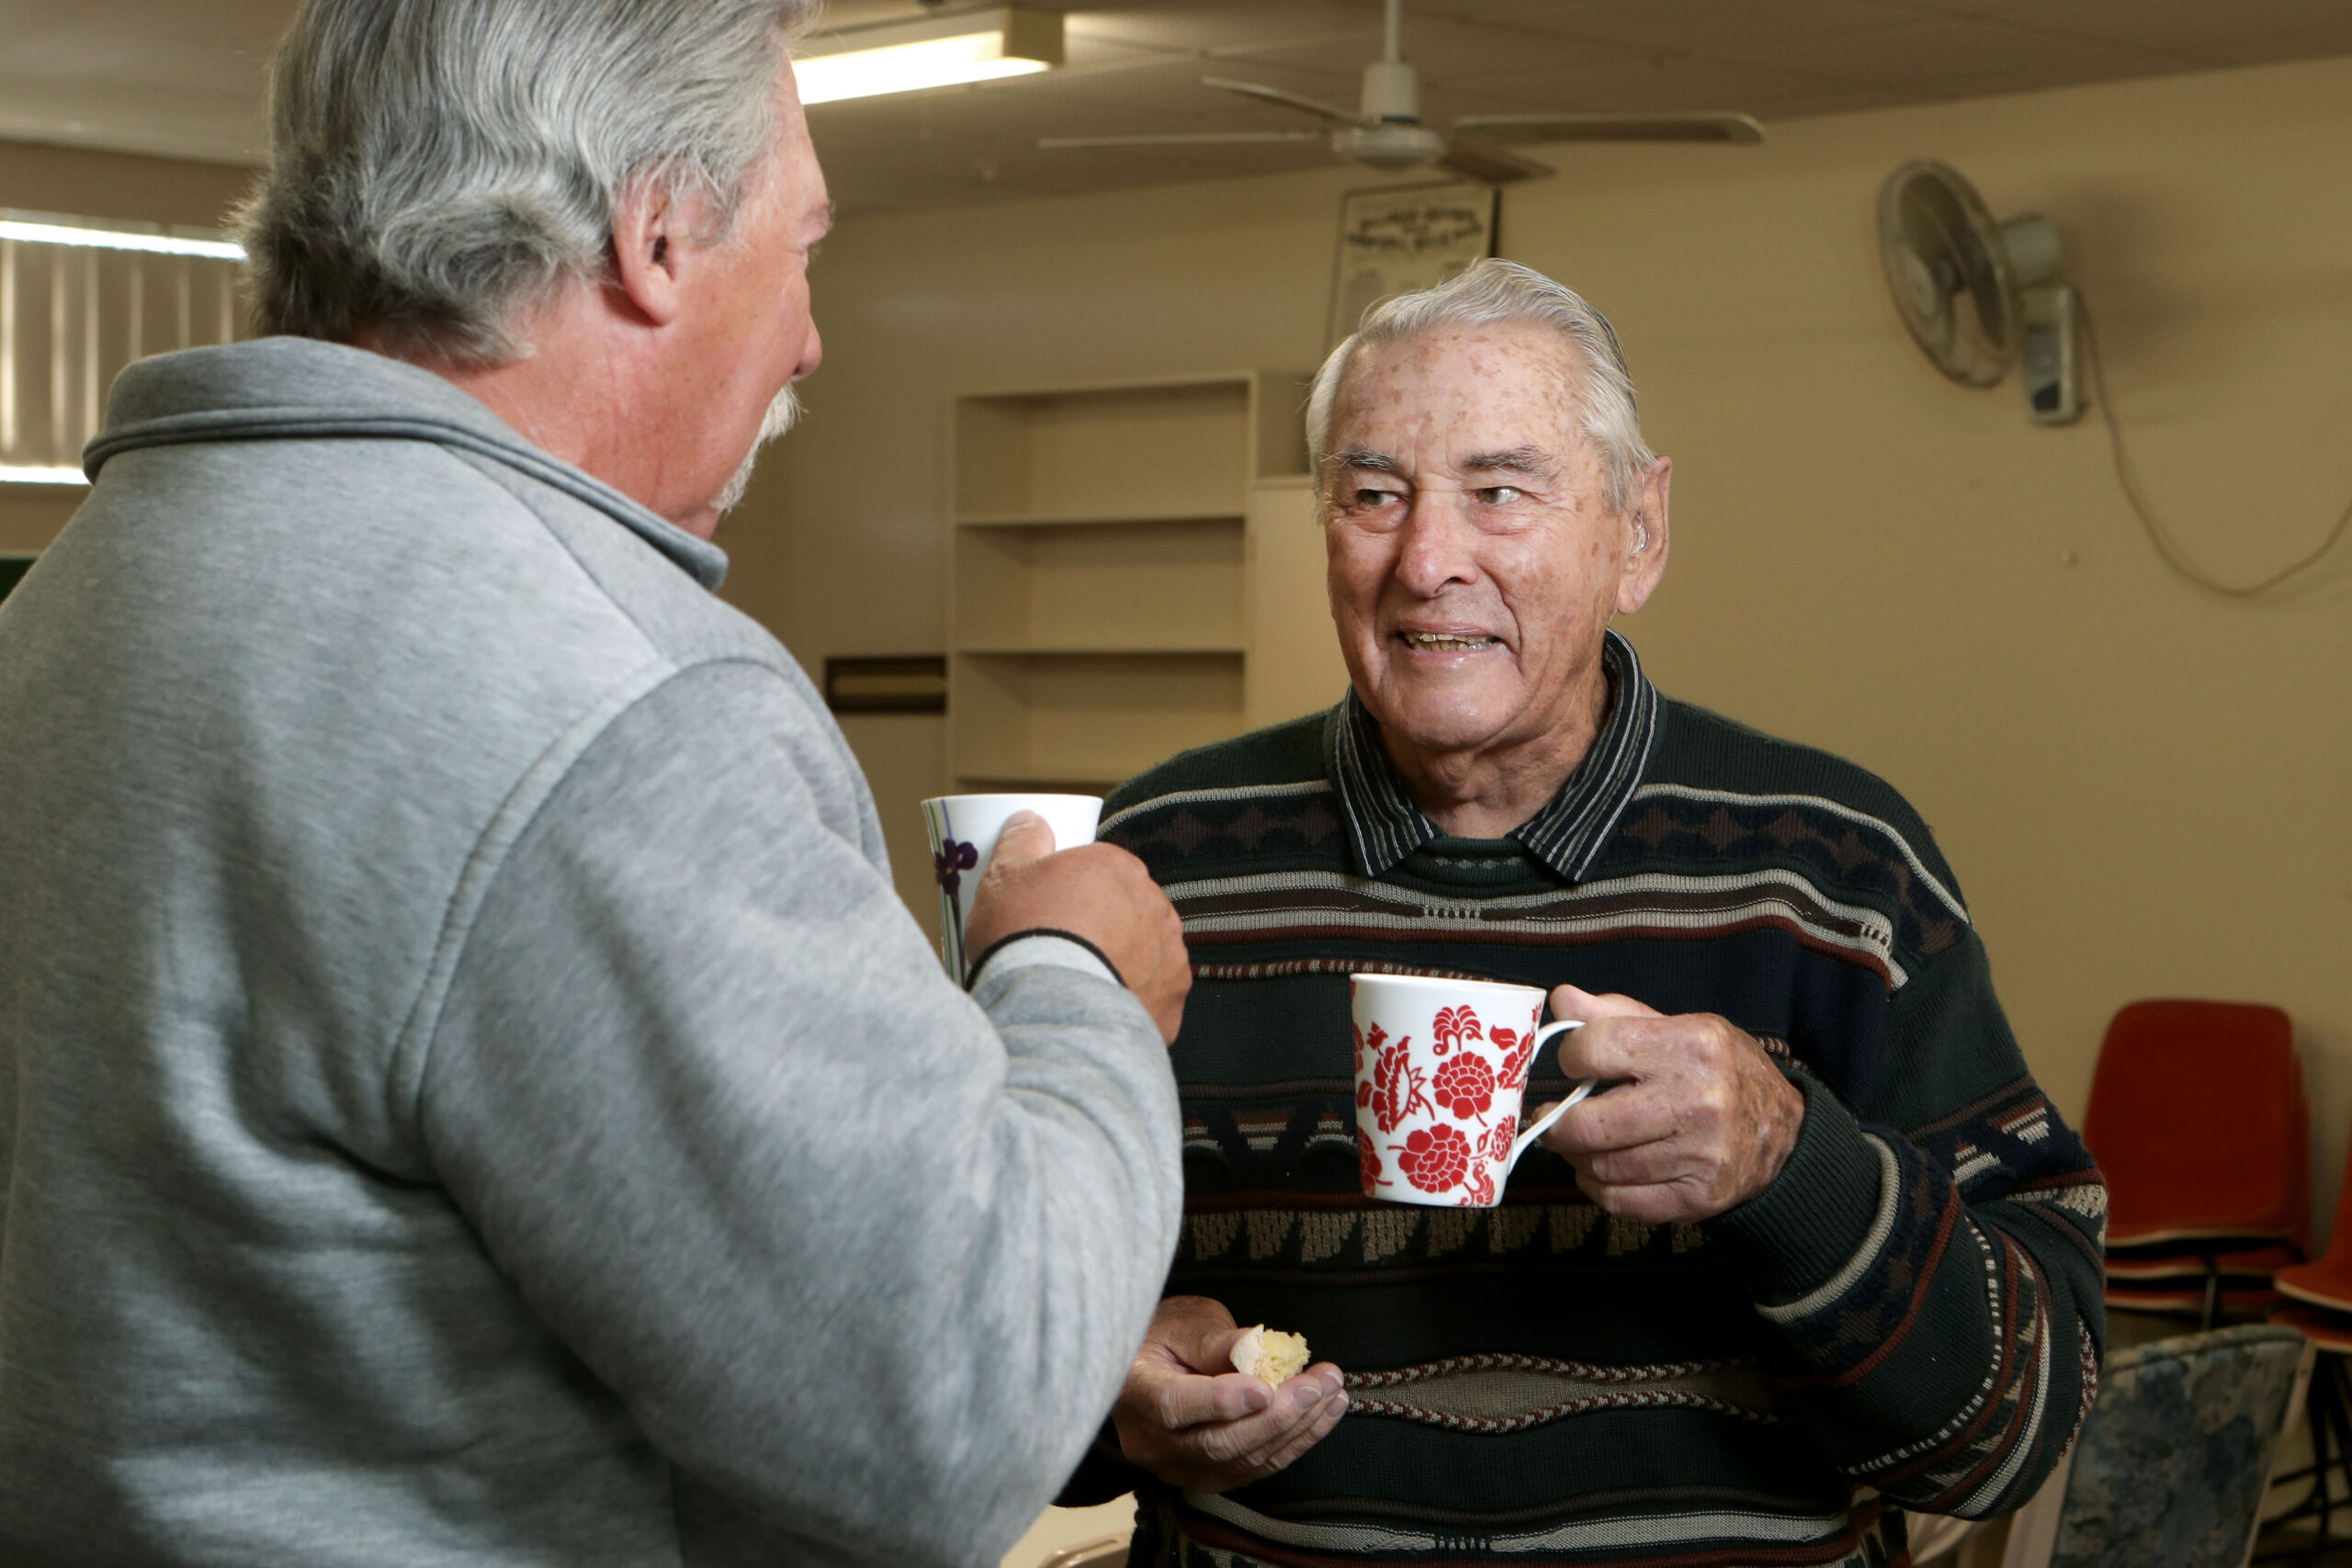 Older gentlemen enjoying a friendly tea time together.